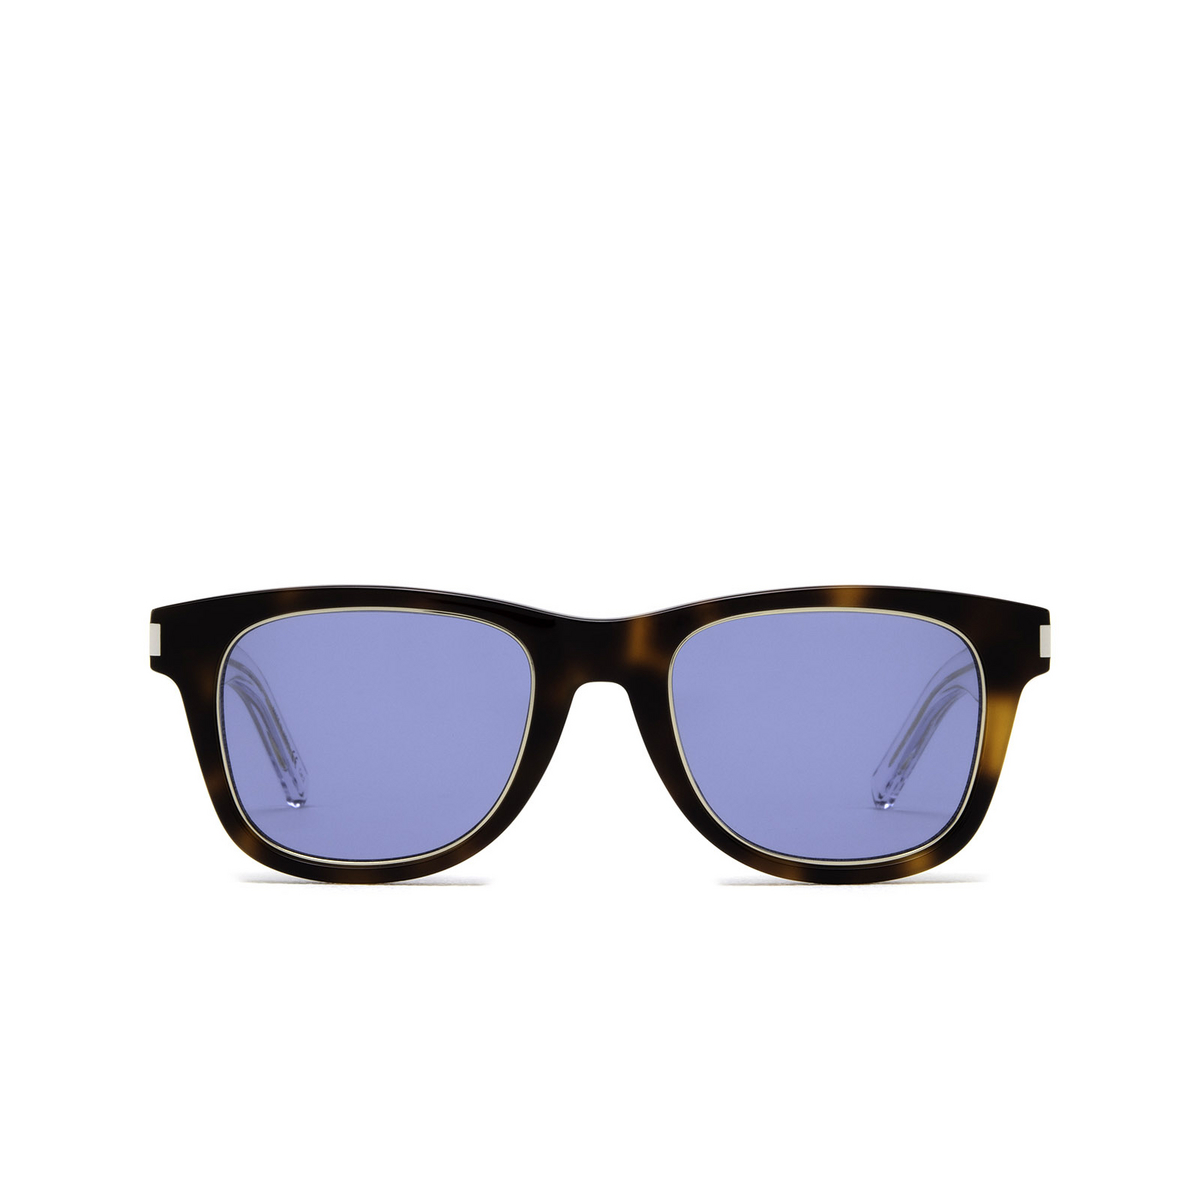 Saint Laurent® Square Sunglasses: SL 51 RIM color Havana 008 - front view.